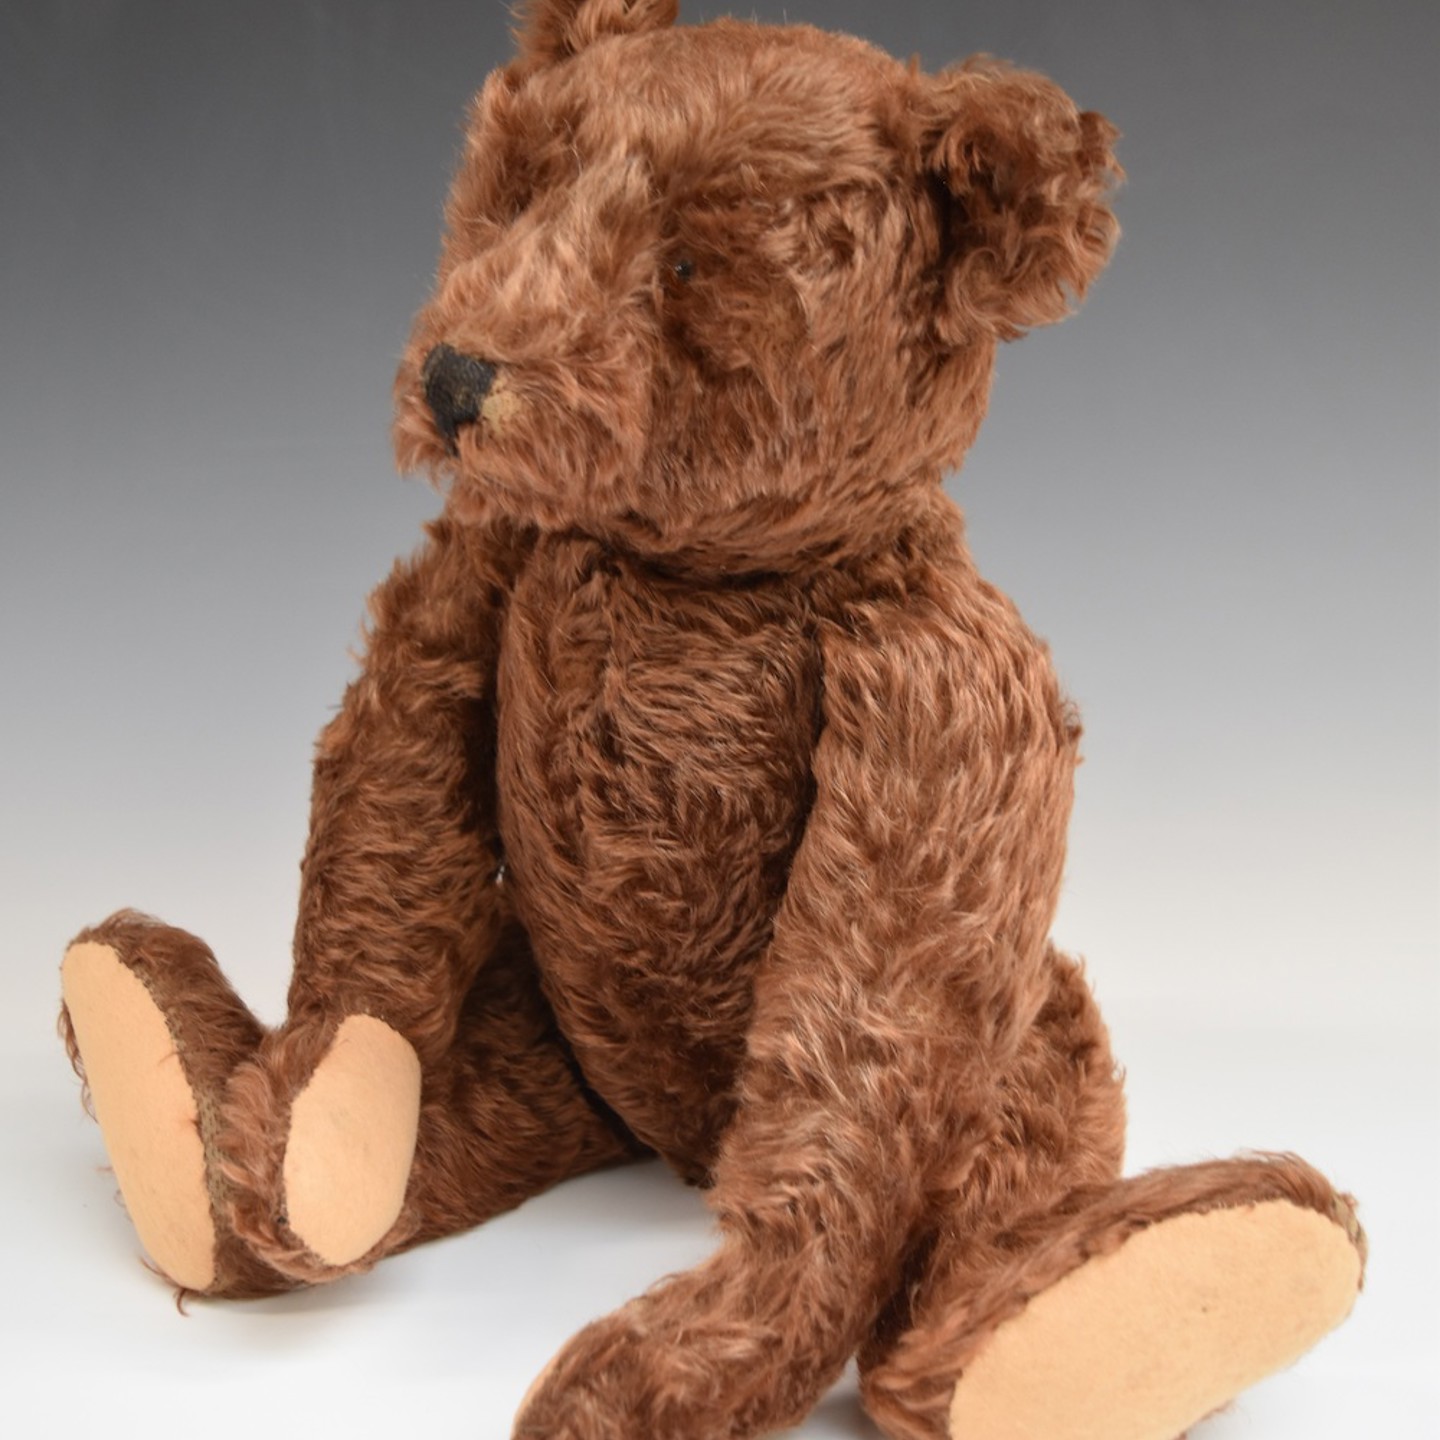 Steiff Teddy Bear With Cinnamon Mohair Sold £5,800